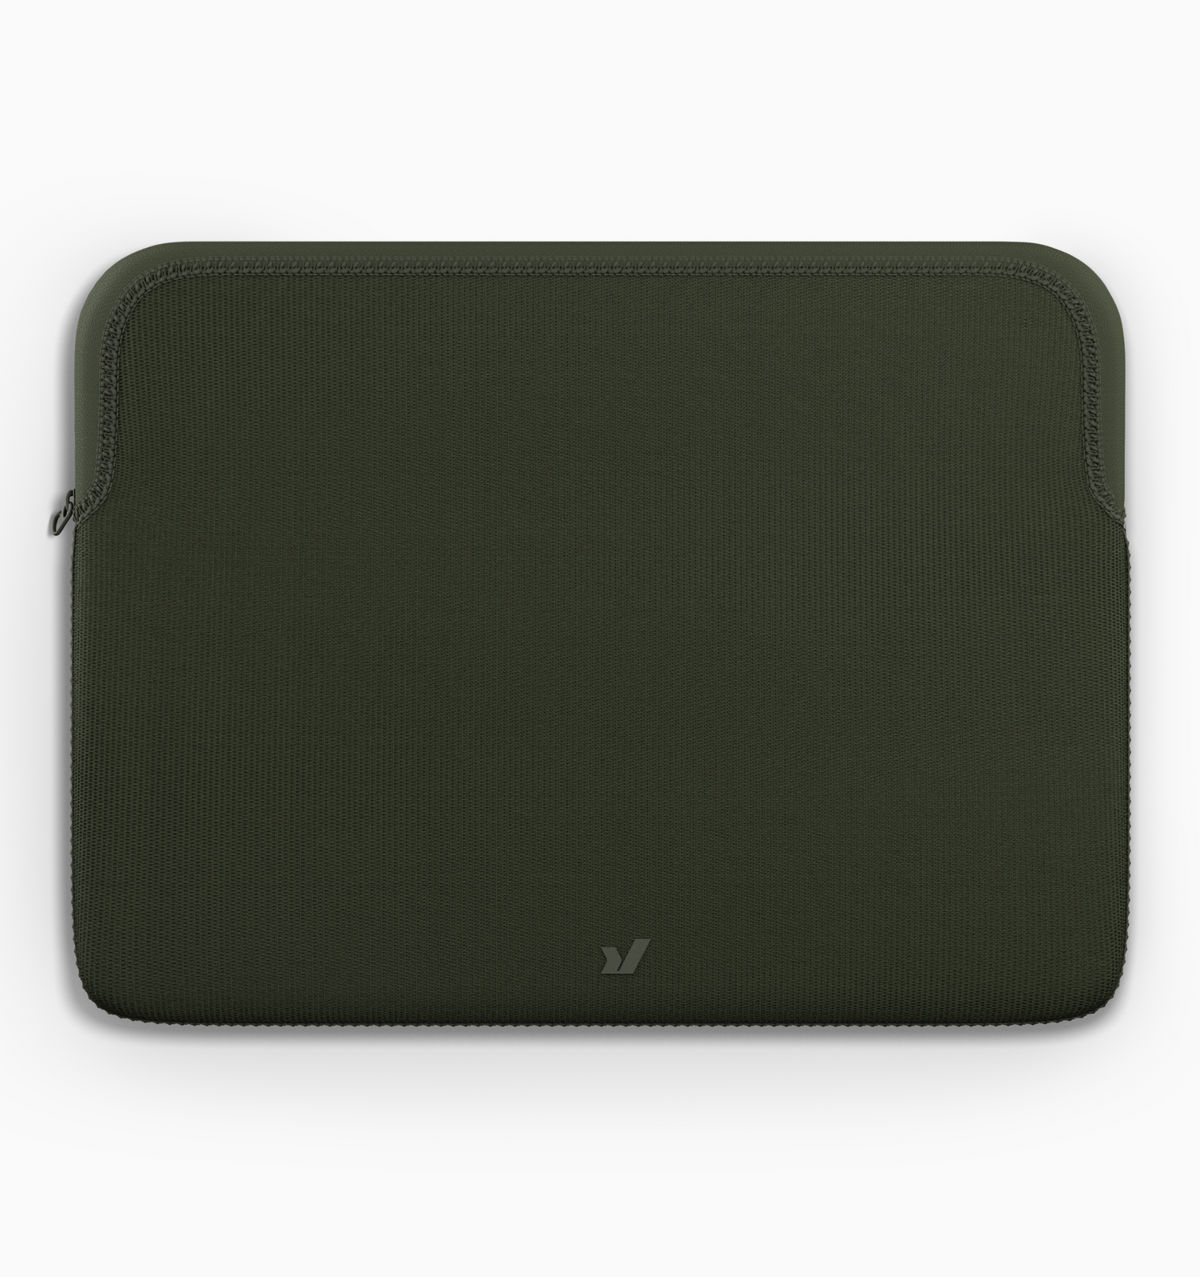 Rushfaster 16" Zippered Laptop Sleeve - Green